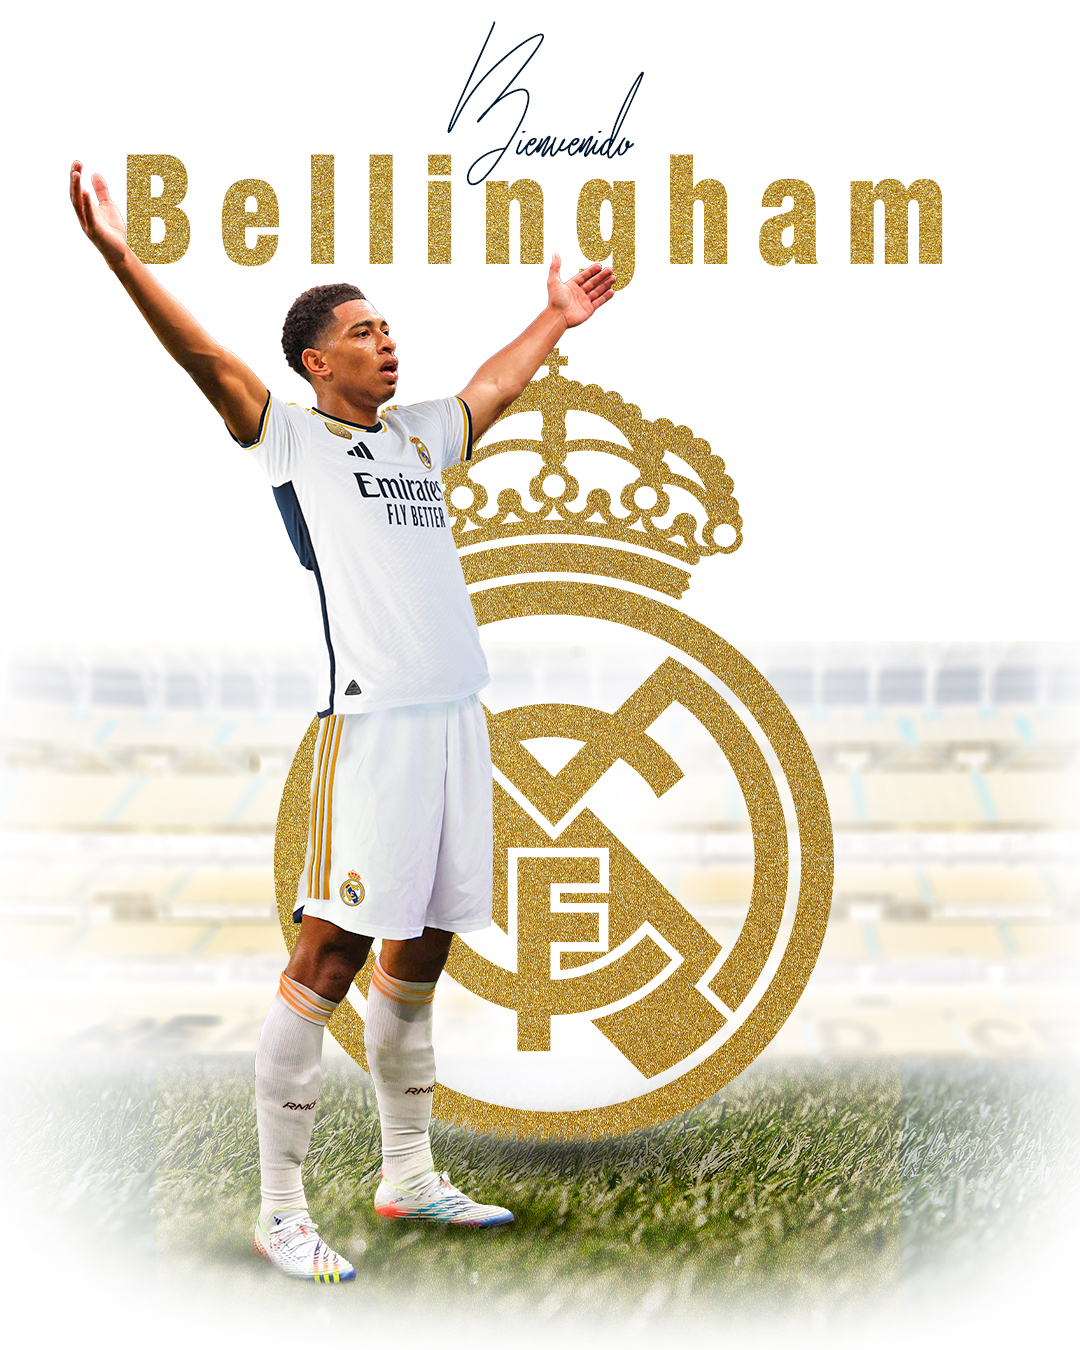 Real Madrid C.F. on X: 👋 @BellinghamJude 🤍 #HeyJude   / X